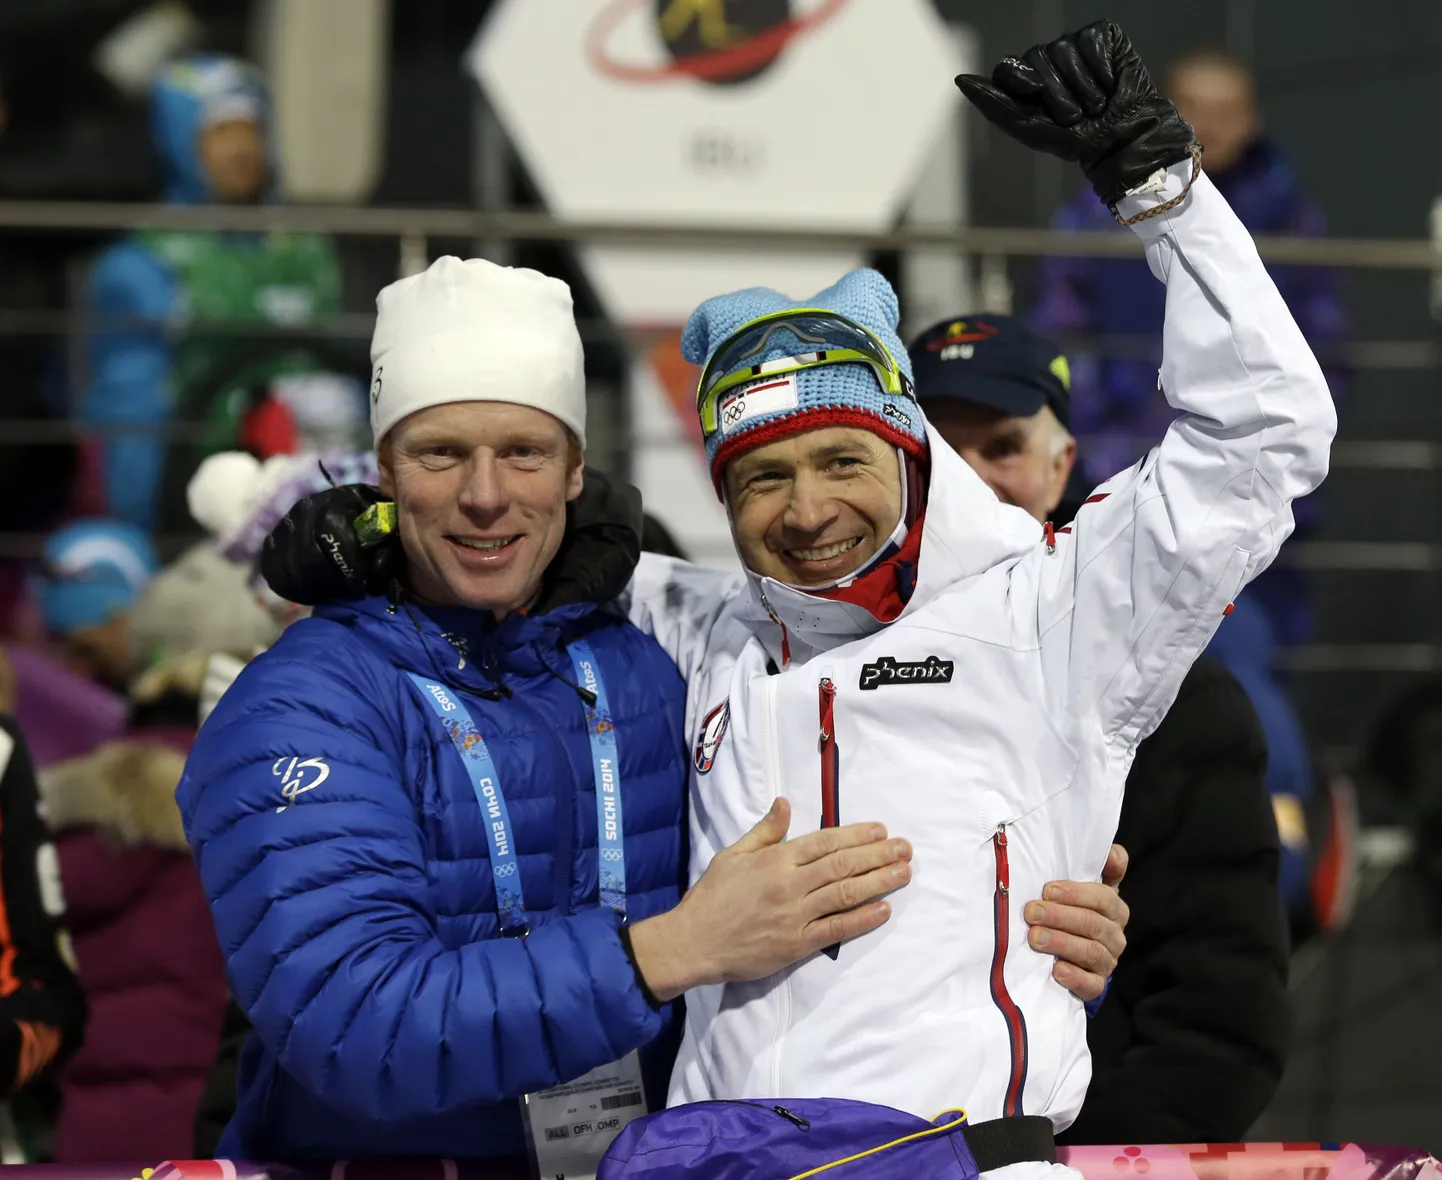 40-aastane Norra laskesuusalegend Ole Einar Bjørndalen võitis täna Sotšis enda karjääri seitsmenda olümpiakulla ja üldse 12 OM-medali. Viimase näitajaga kerkis ta Norra murdmaasuusalagenedi Bjørn Daehlie kõrvale, kes võitis samuti kokku 12 olümpiamedalit.